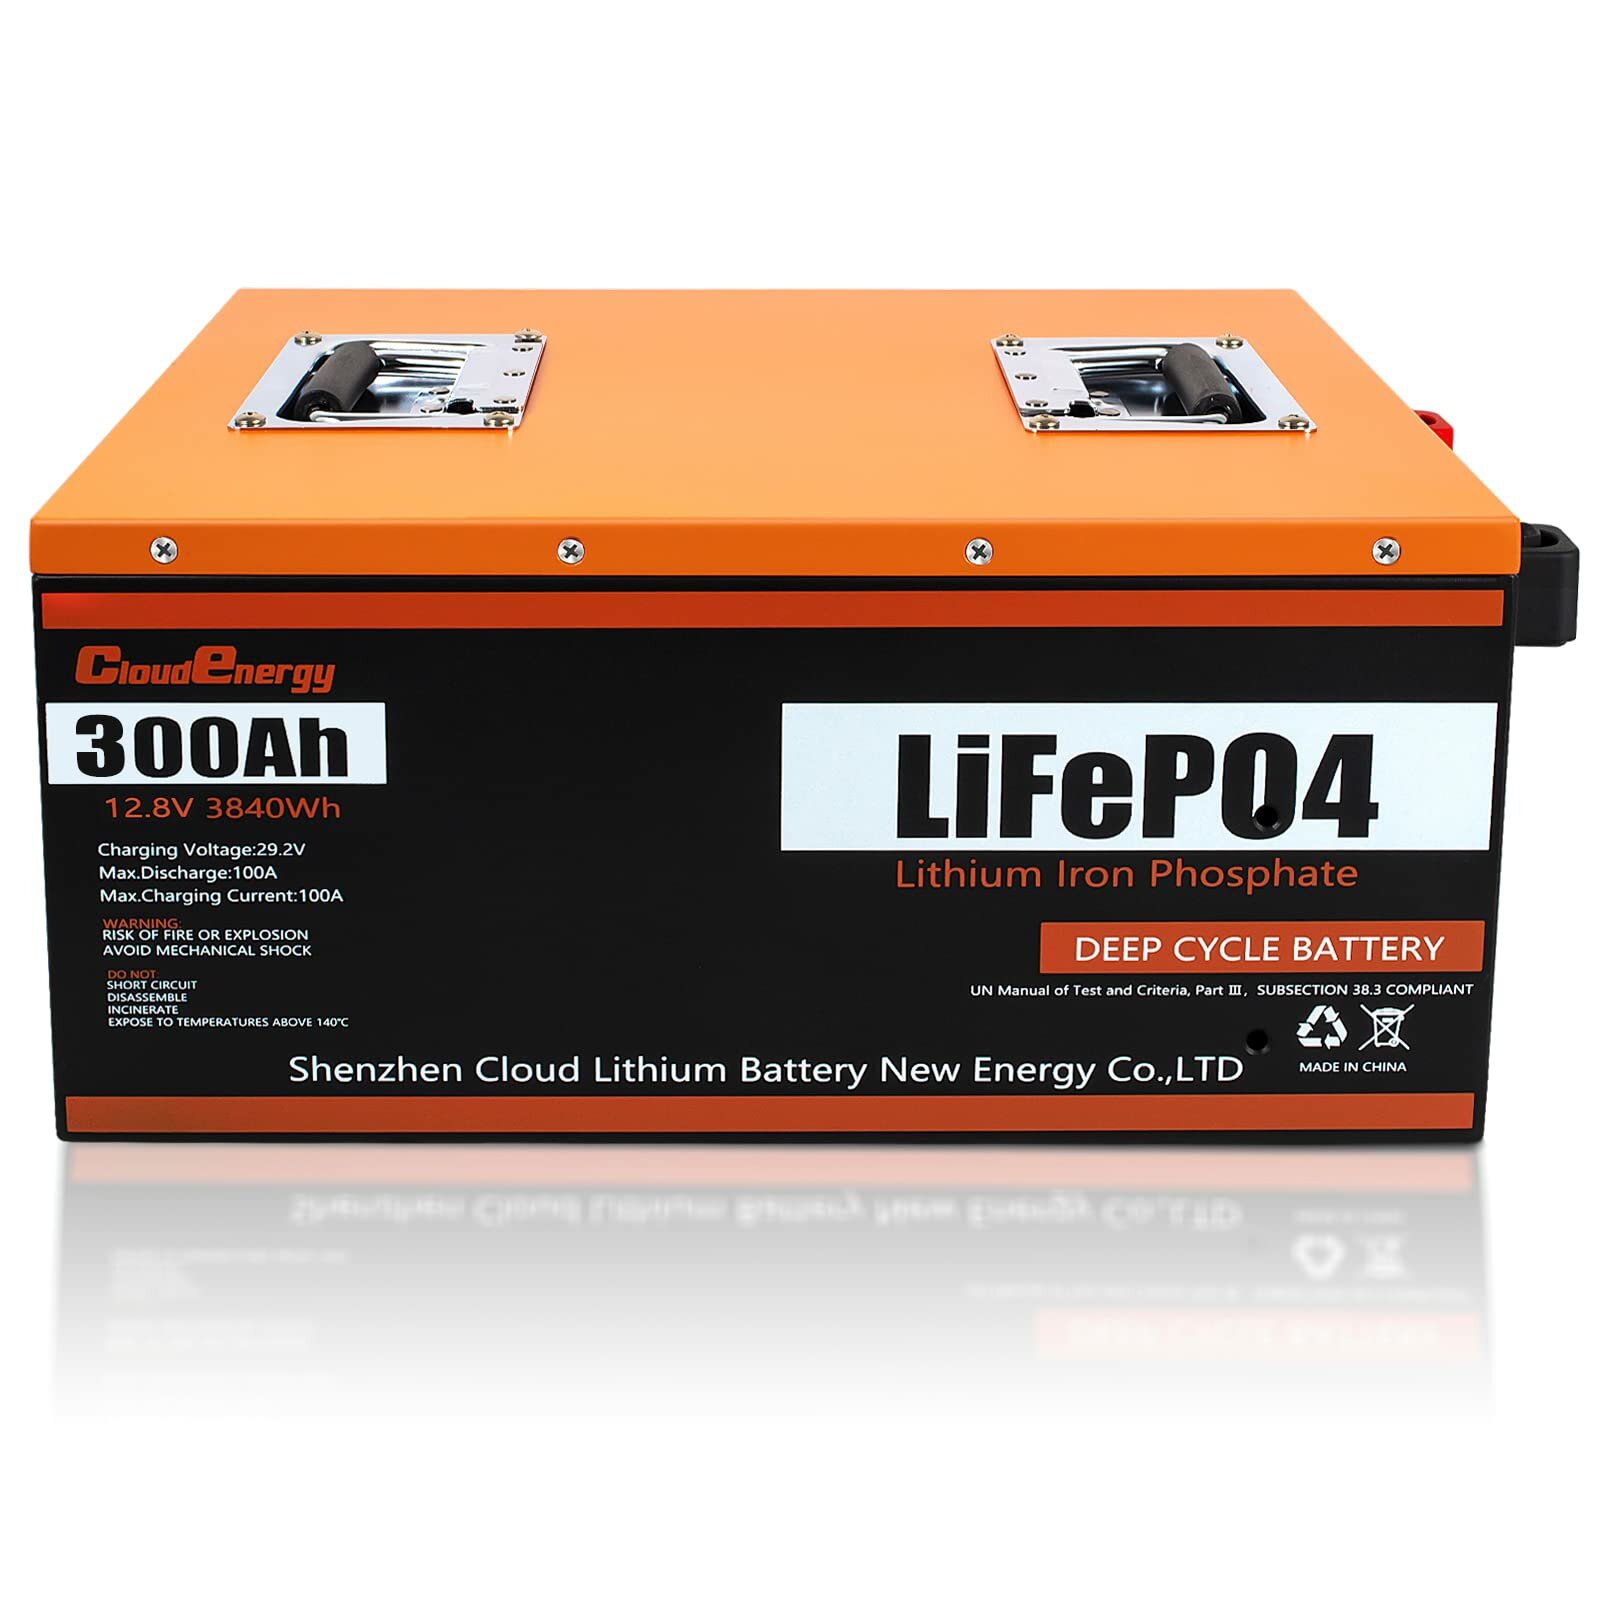 [US Direct] Batterie LiFePO4 Cloudenergy 12V 300Ah 3.84kWh 2560W Cycle profond avec une durée d'exécution plus longue BMS intégré de 100A 6000+ cycles & durée de vie de 10 ans Parfait dans les systèmes de stockage solaire/énergétique VR, marine, alimentation de secours